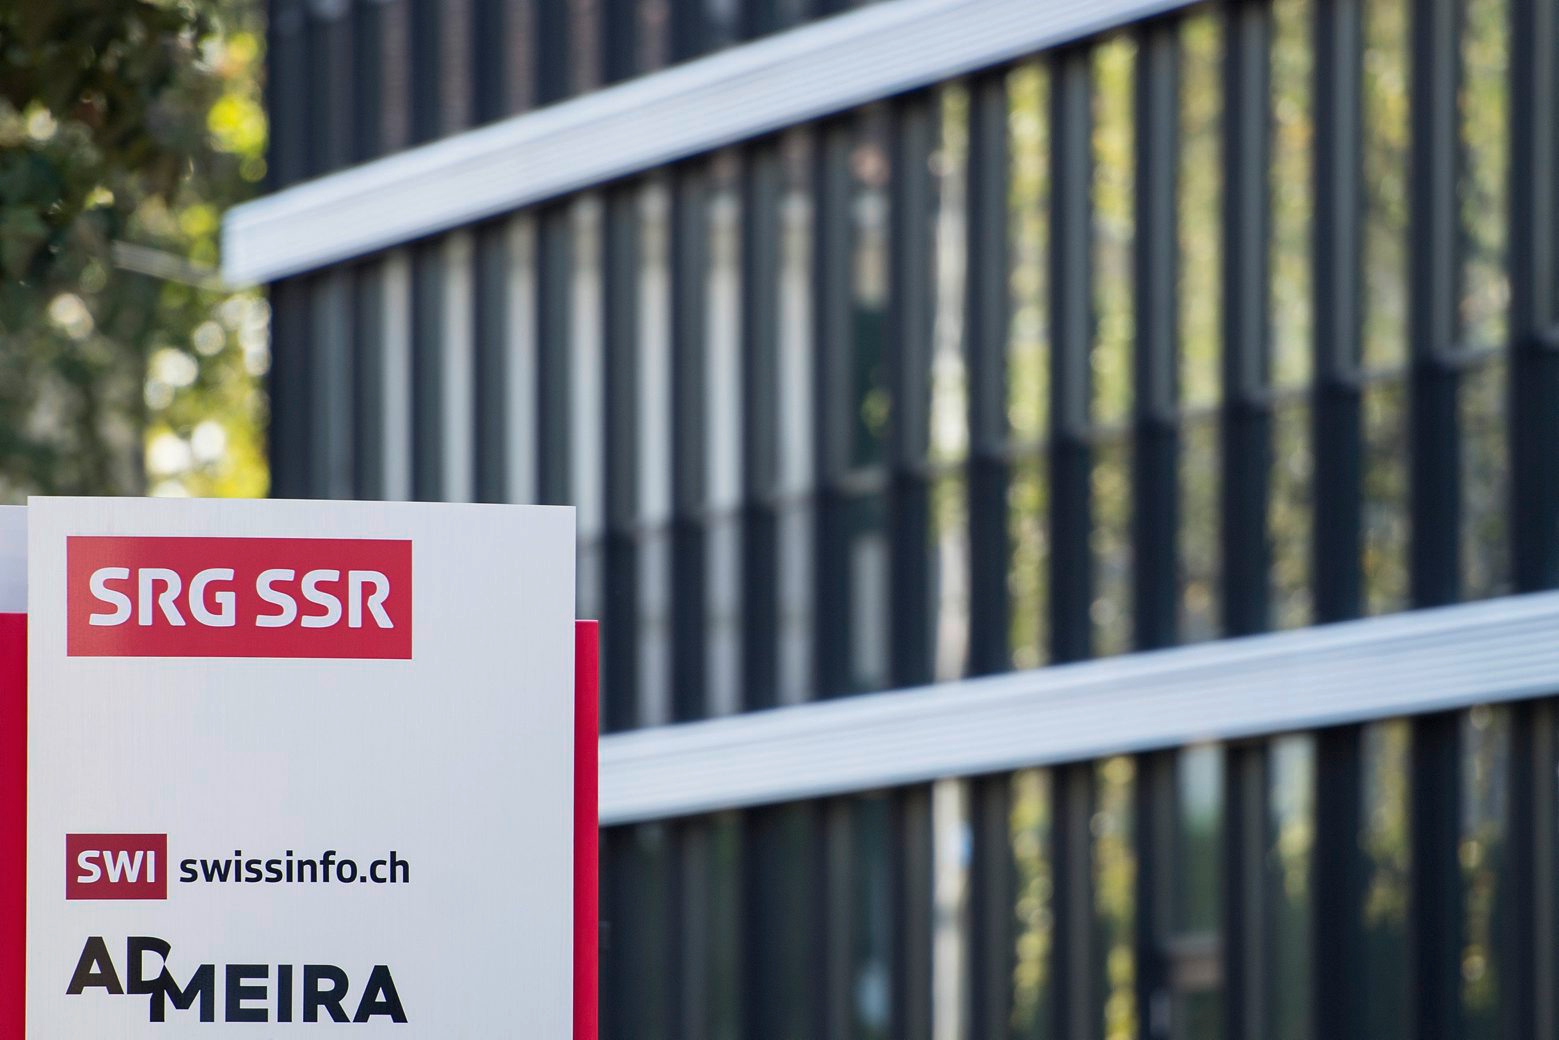 ARCHIVBILD ZUM STELLENABBAU BEI DER SRG, AM DONNERSTAG, 28. JUNI 2018 - Sicht auf das Logo der Vermarktungsfirma Admeira, am Donnerstag, 6. Oktober 2016, in Bern. Die Admeira ist die gemeinsame Werbe-Vermarktungsfirma von des Schweizer Fernsehen SRF, der Swisscom und des Medienhauses Ringier. Der Verband Schweizer Medien (VSM) und verschiedene Medienunternehmen sind berechtigt, gegen die Beteiligung der SRG am Werbe-Joint Venture Admeira mit Ringier und Swisscom gerichtlich vorzugehen. Das hat das Bundesverwaltungsgericht in einem am Donnerstag, 6. Oktober 2016 publizierten Urteil entschieden. (KEYSTONE/Peter Schneider) SCHWEIZ STELLENABBAU SRG